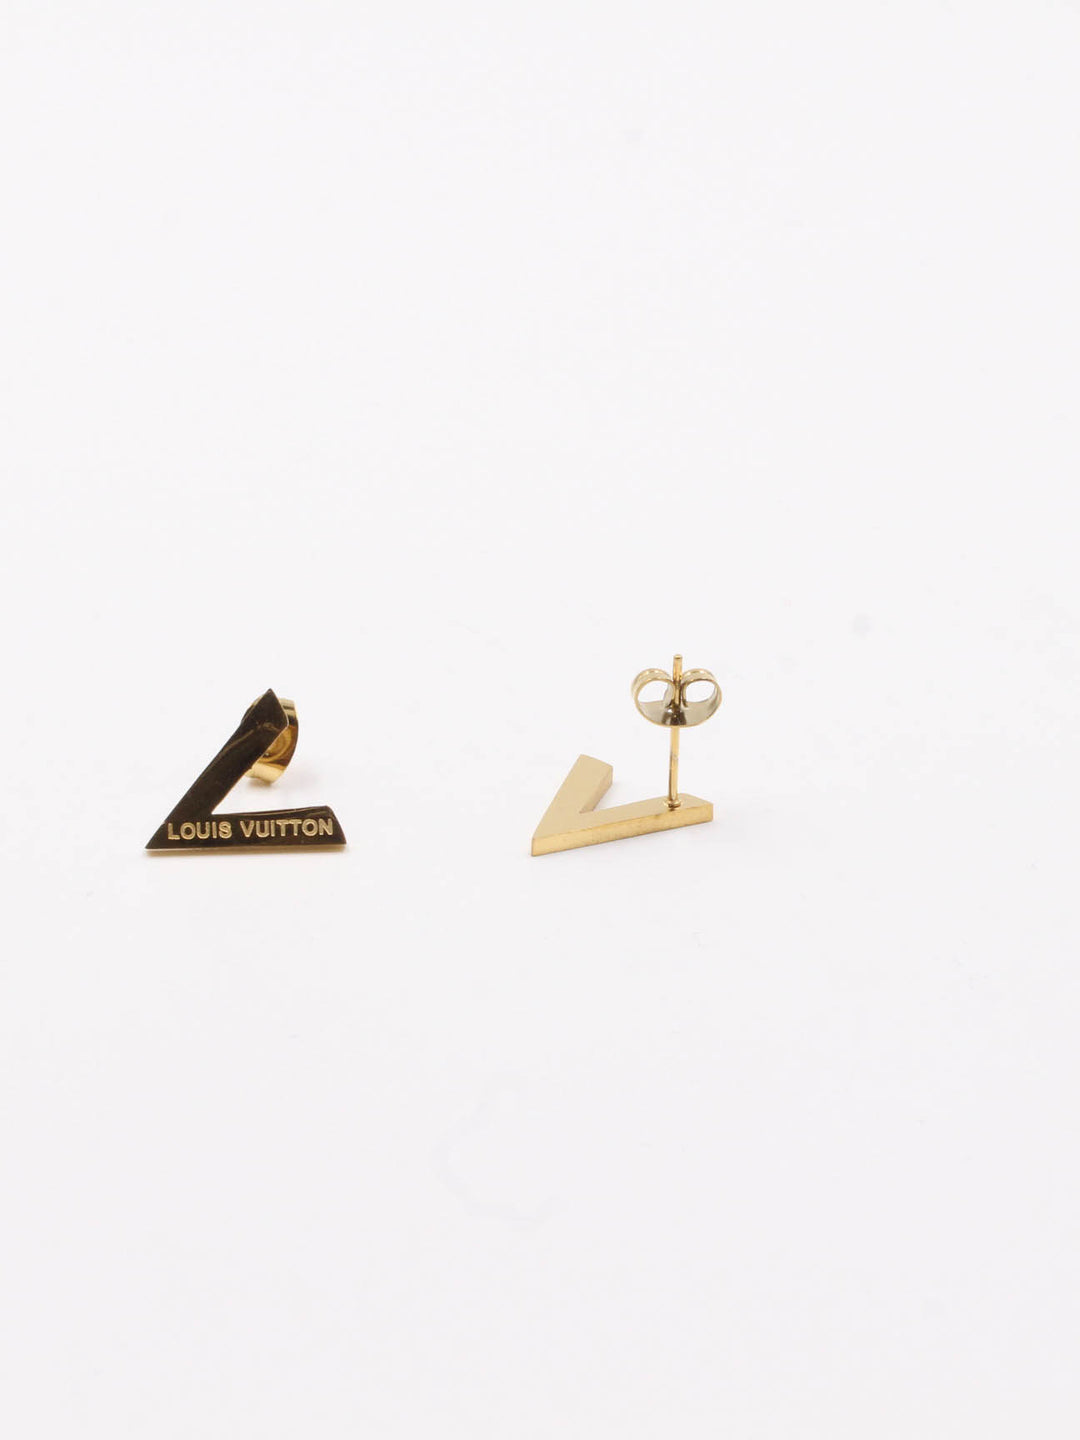 earring brand Louis Vuitton - حلق ماركة لويس فيتون  - Jewel